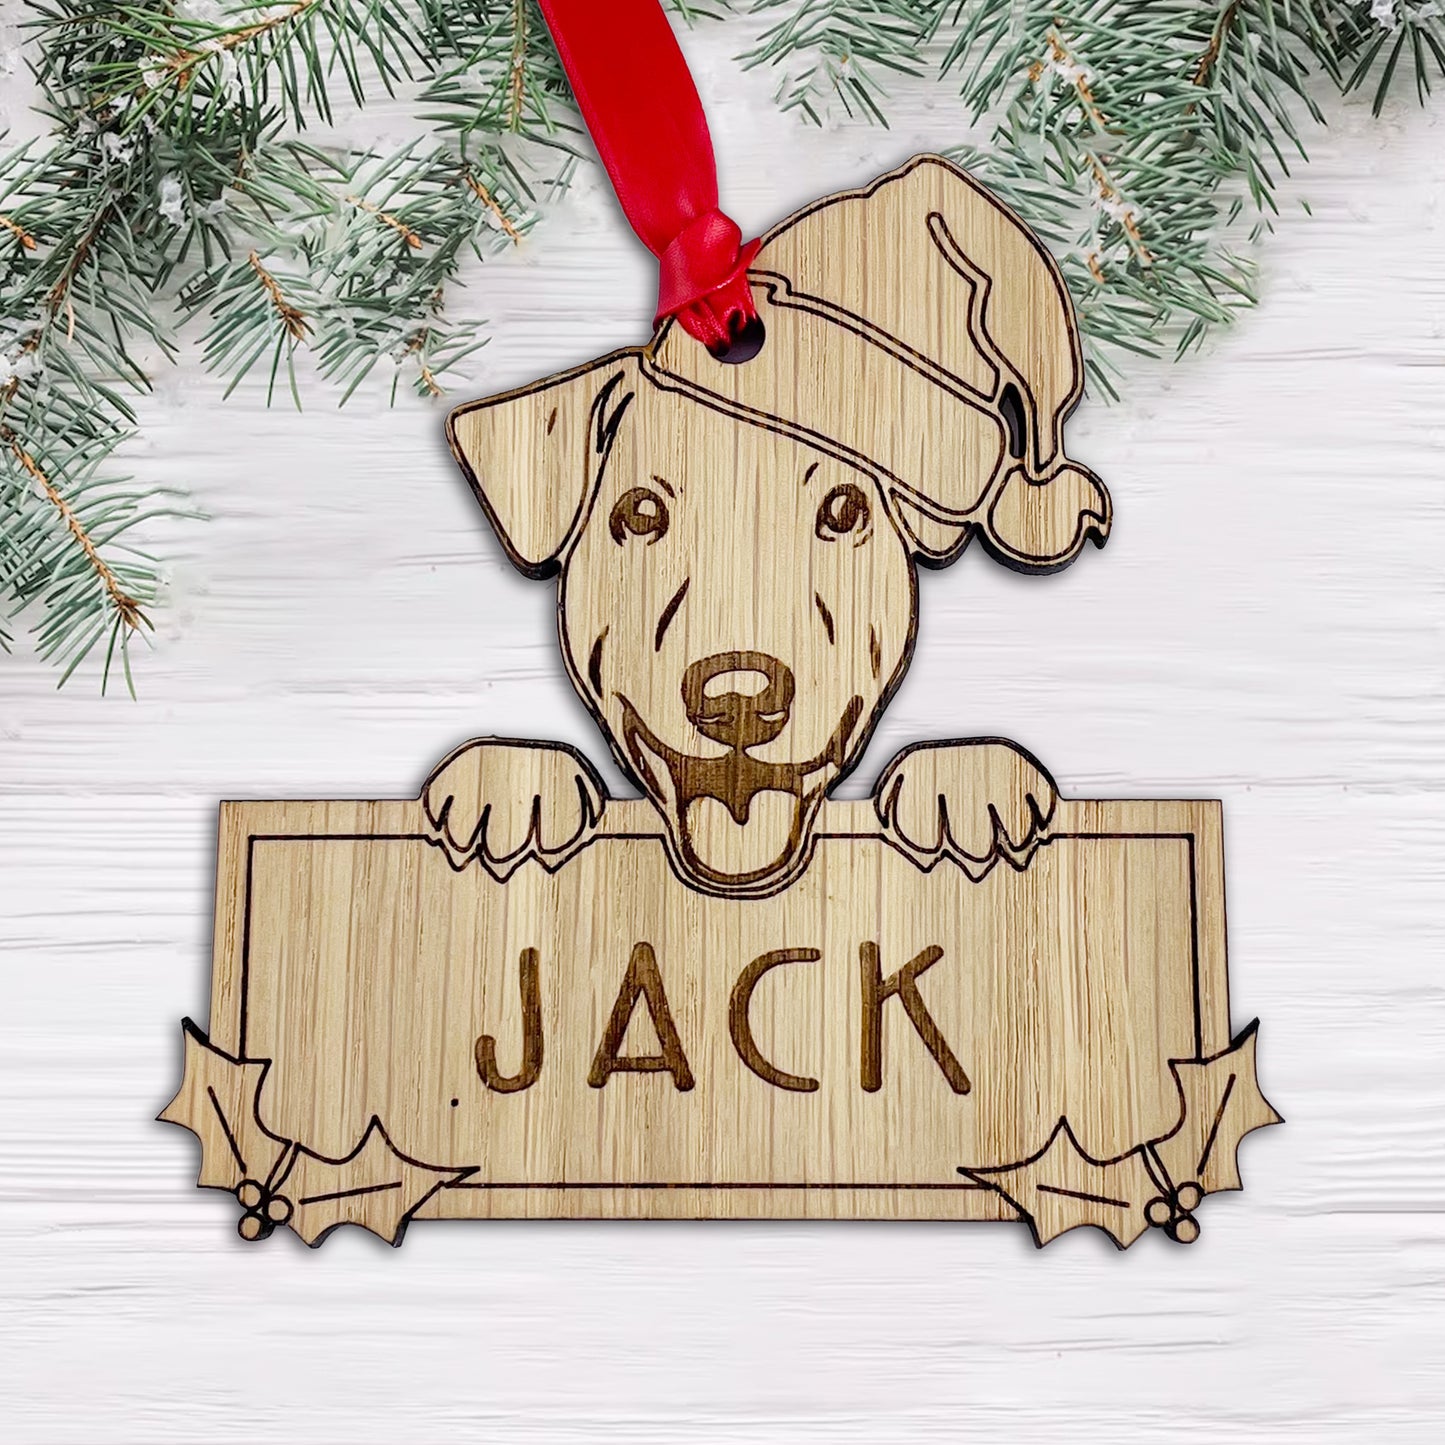 Personalised Jack Russell Dog Bauble - Peeking Dog - Oak Veneer Wood - Add your own name!